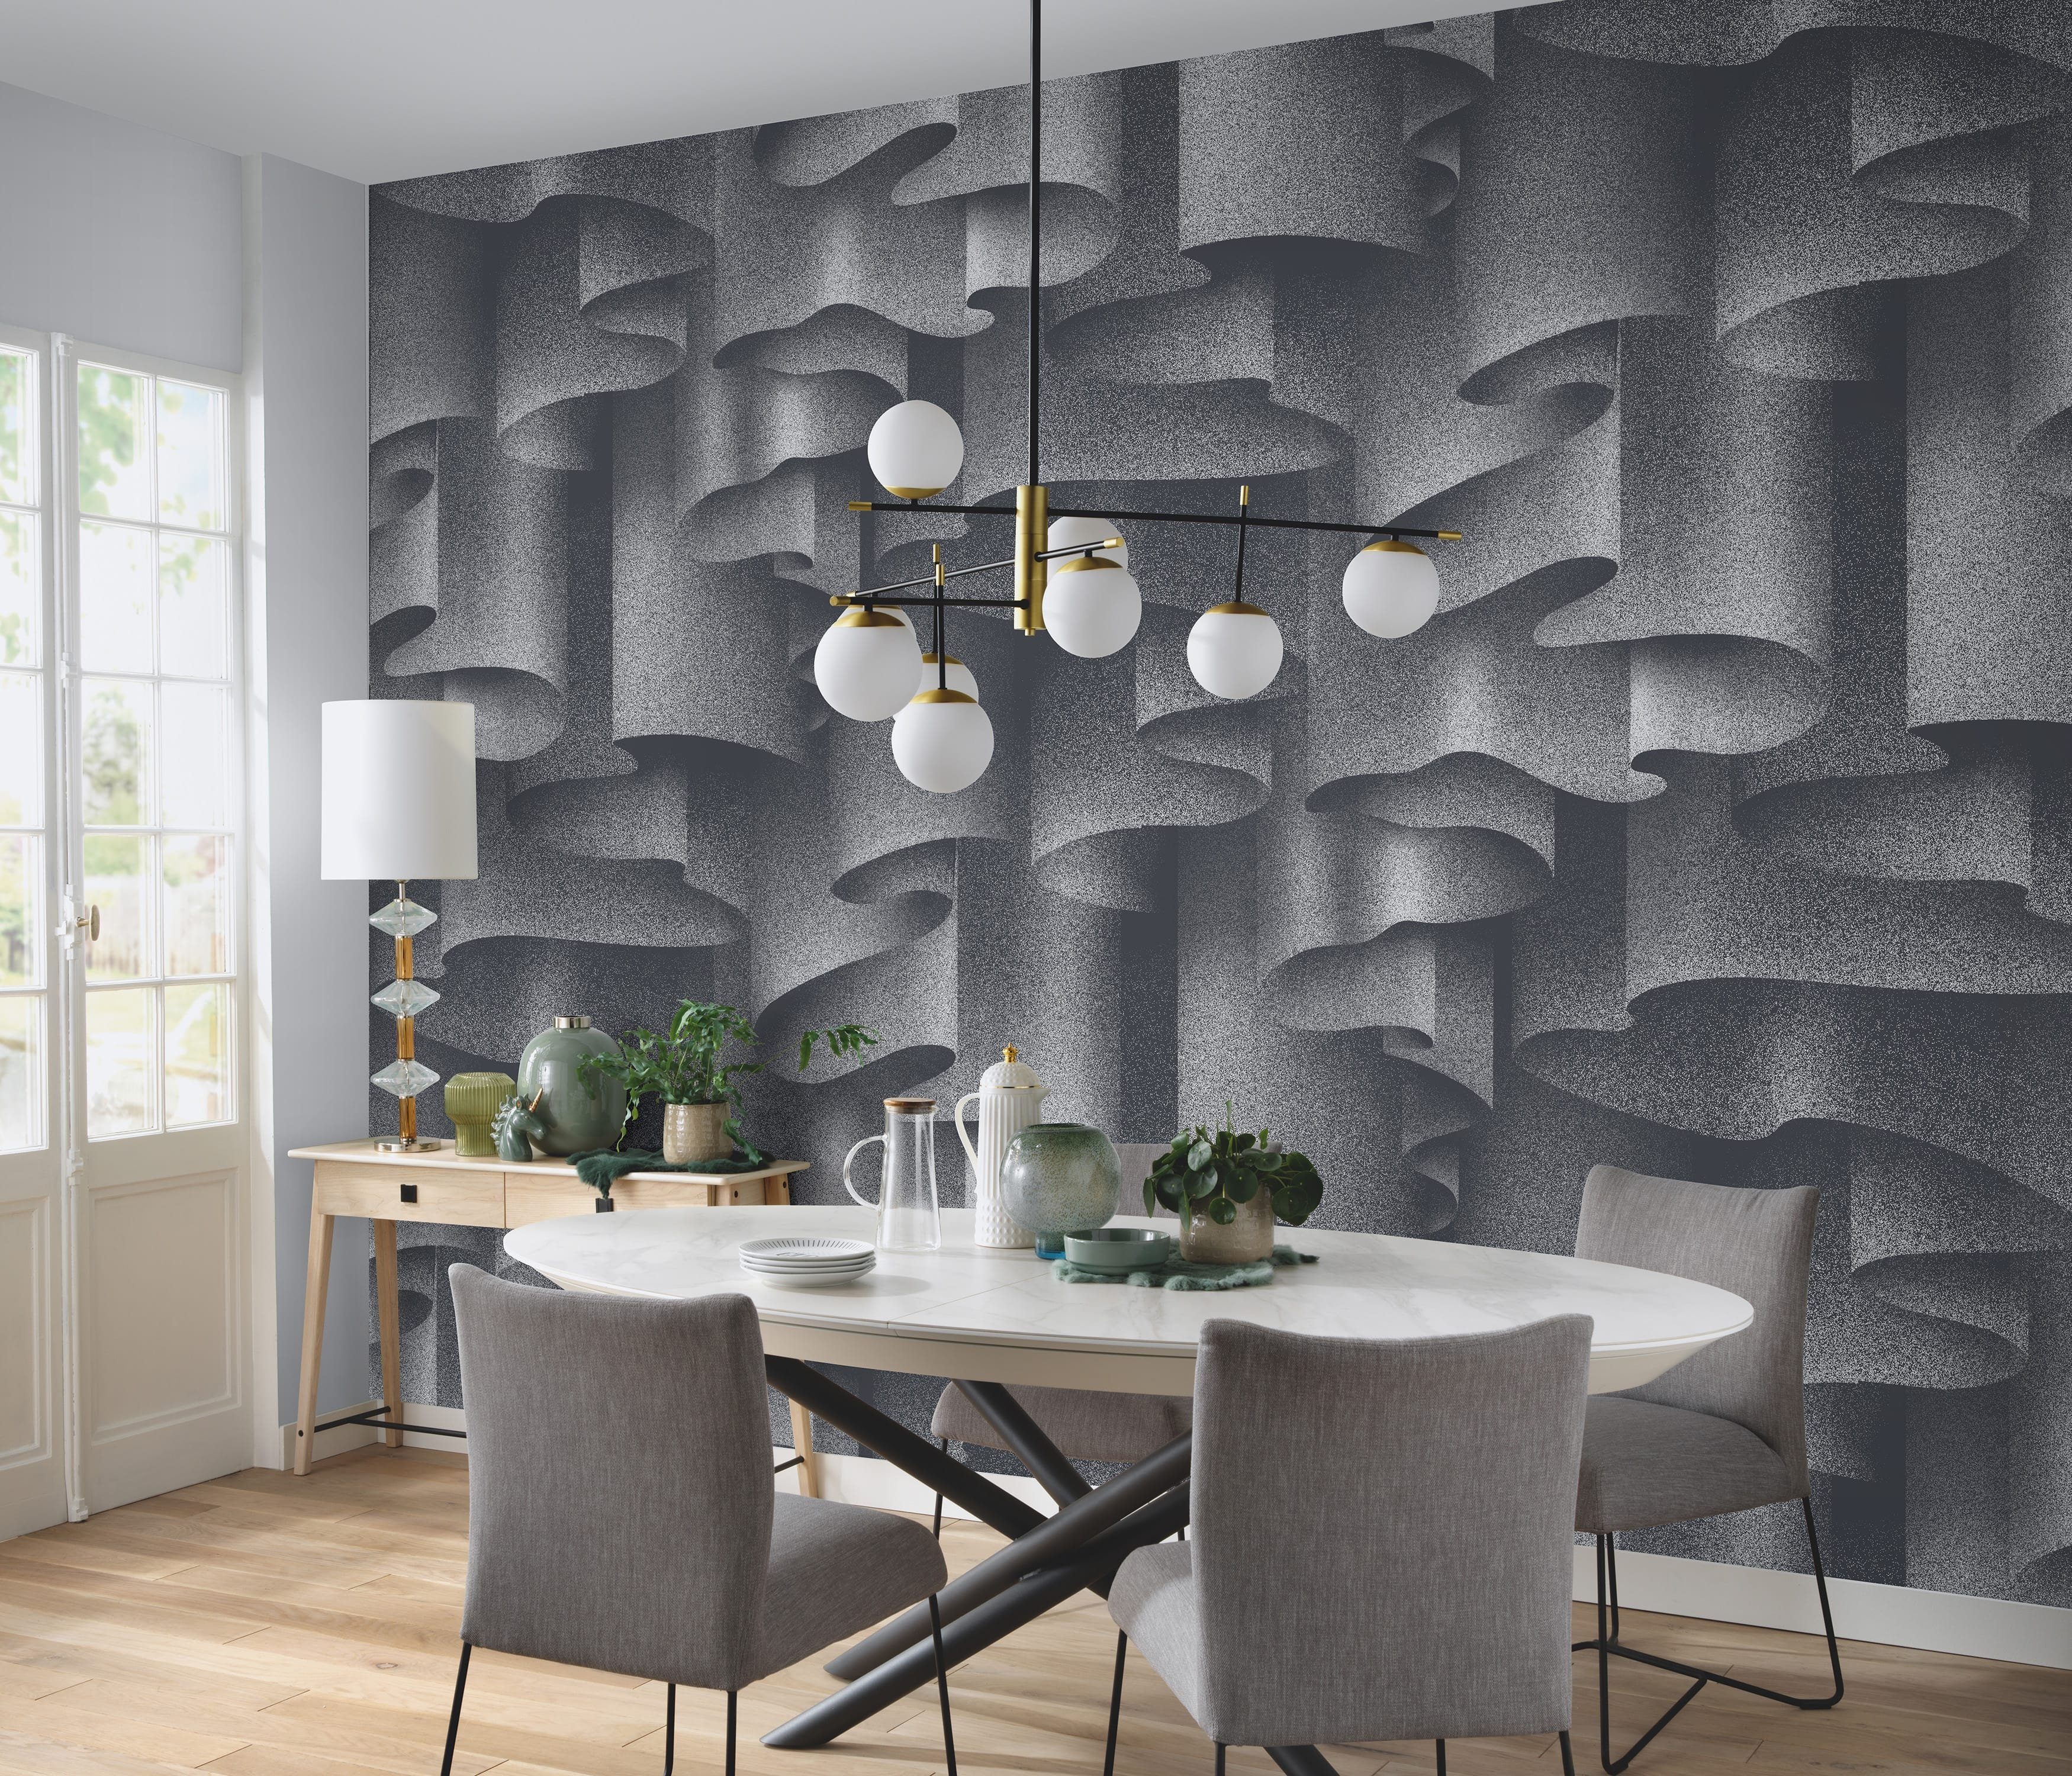 Newroom Vliestapete, [ 4 x 2,7 m ] großzügiges Motiv - kein wiederkehrendes Muster - Fototapete Wandbild 3D-Motiv Muster Muster Made in Germany